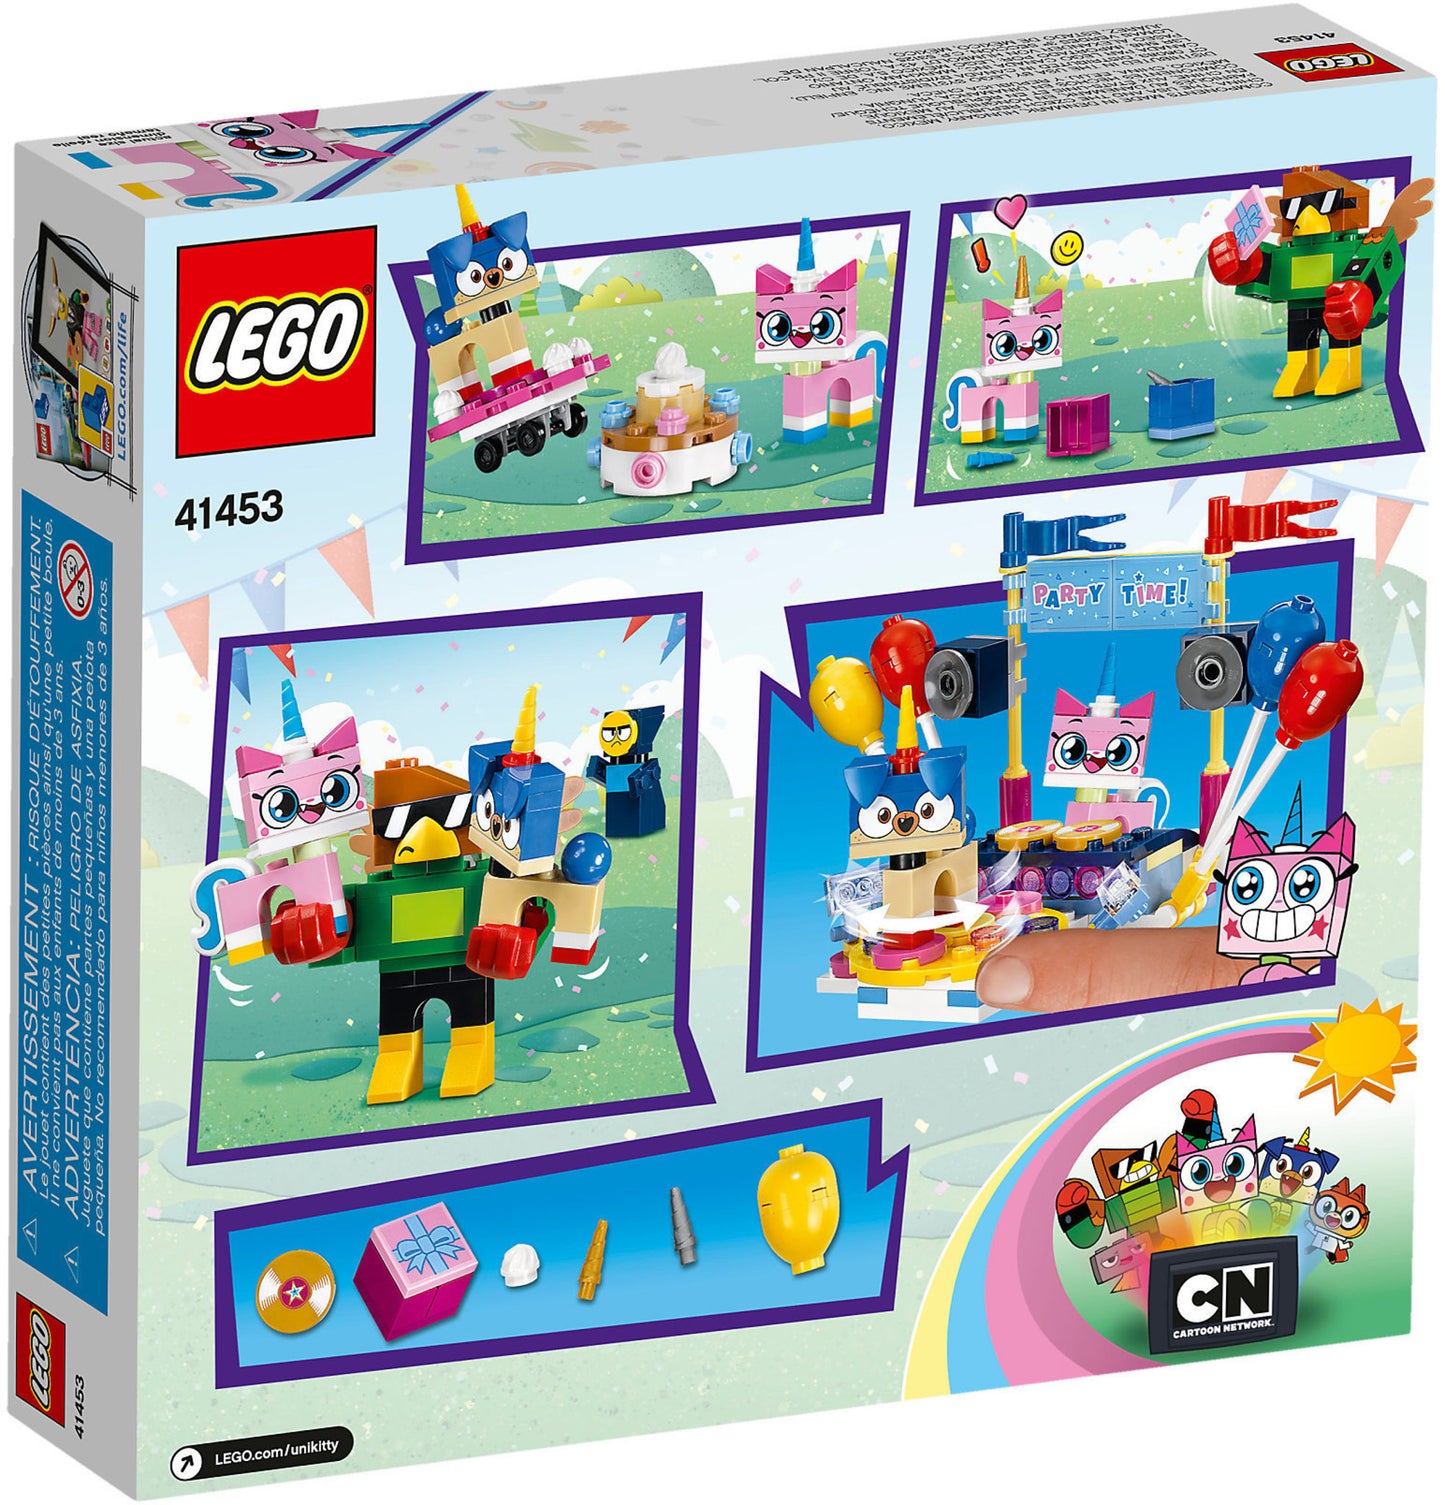 41453 LEGO Unikitty! - Party Time